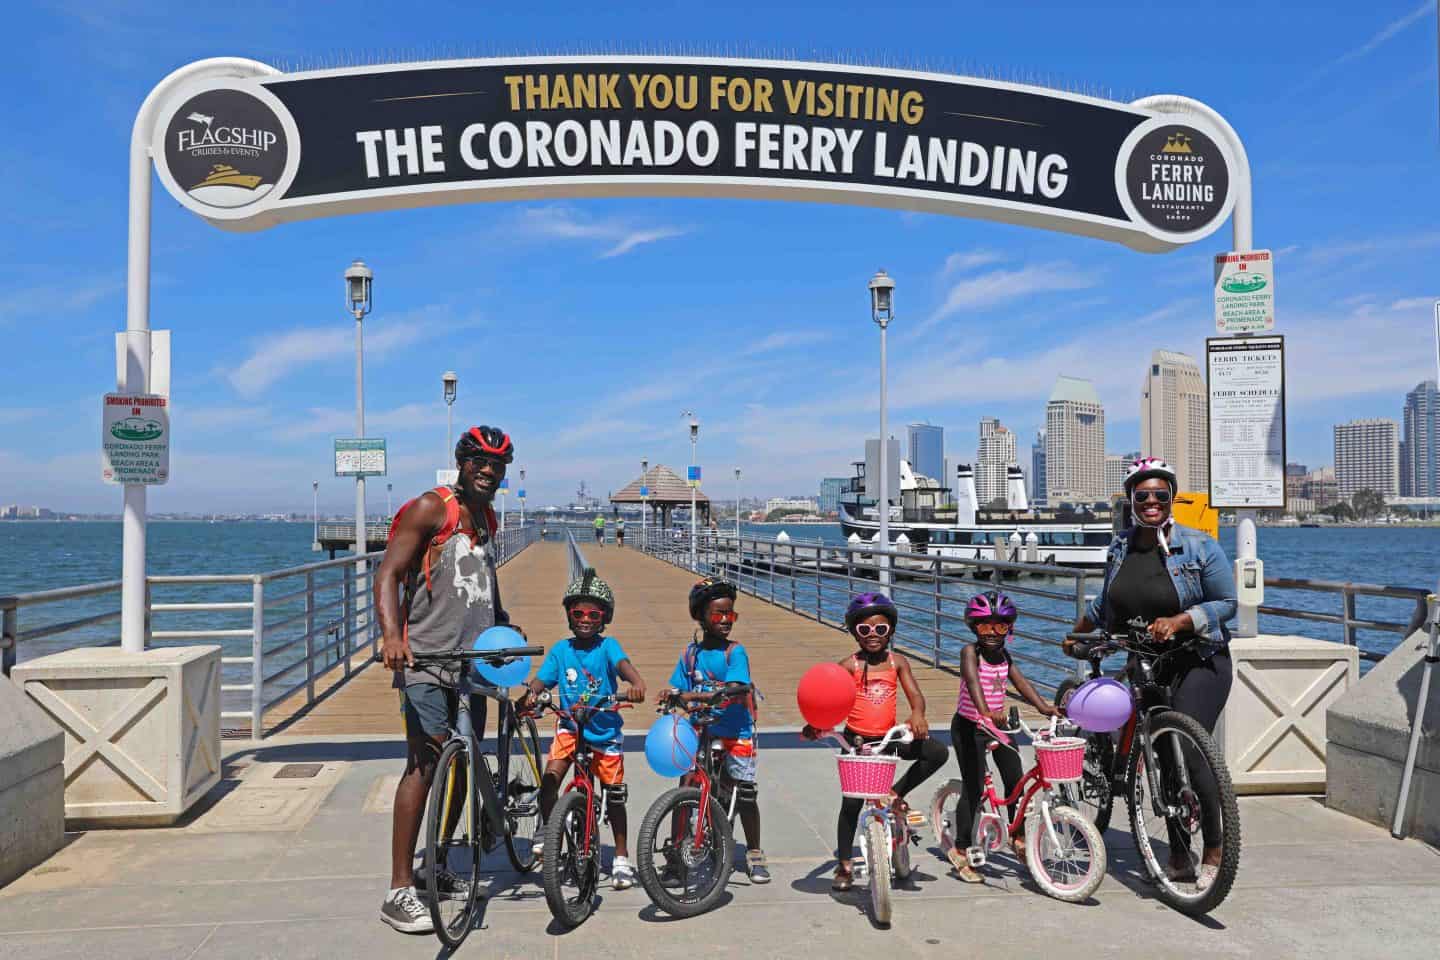 Family taking the Coronado Ferry to Coronado Island with bikes